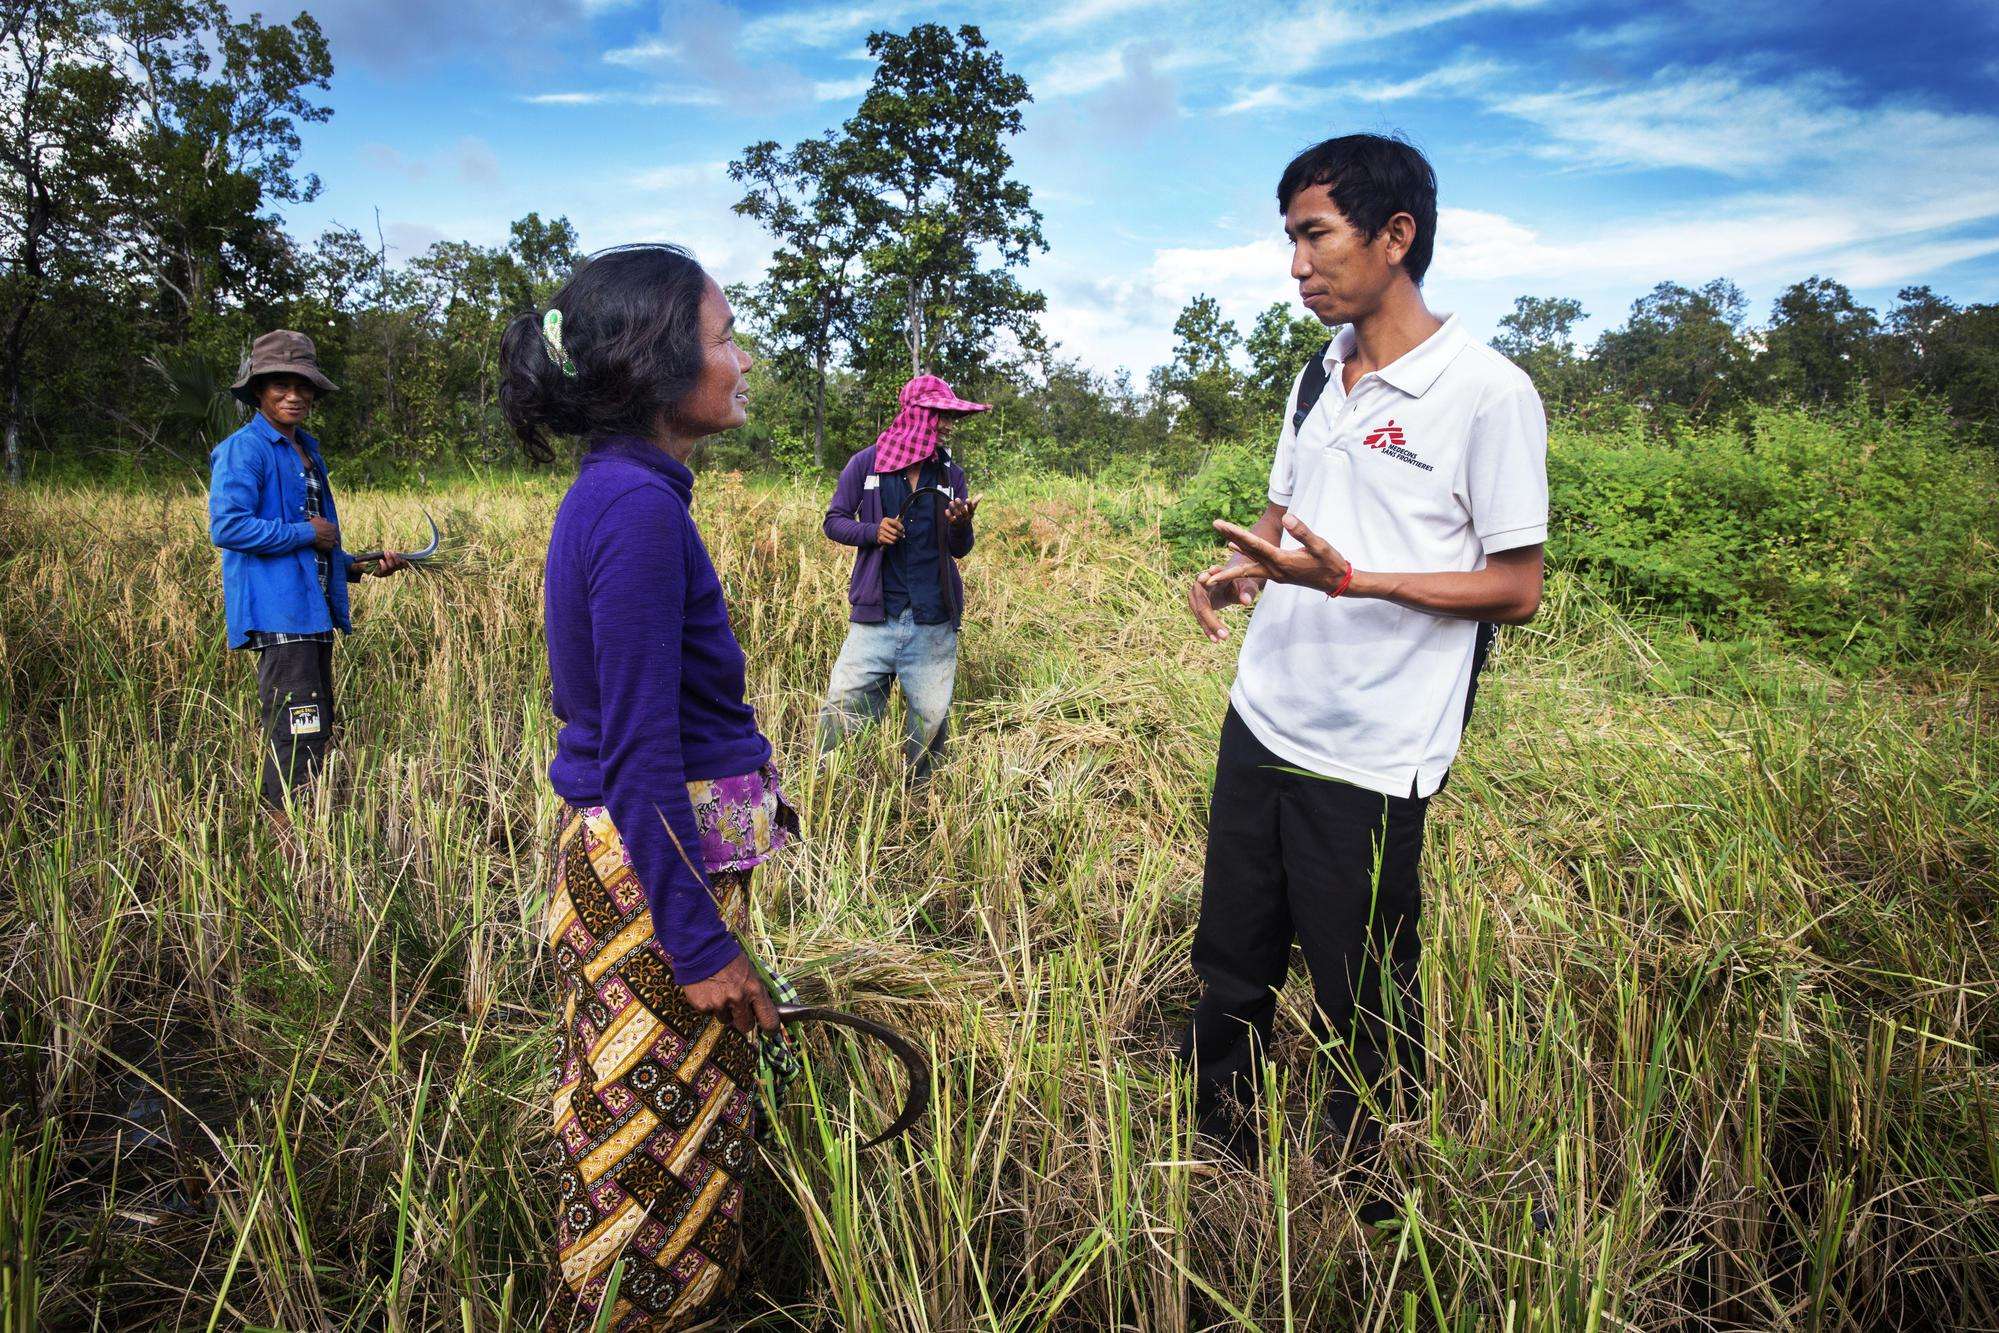 MSF Malaria Project in Cambodia